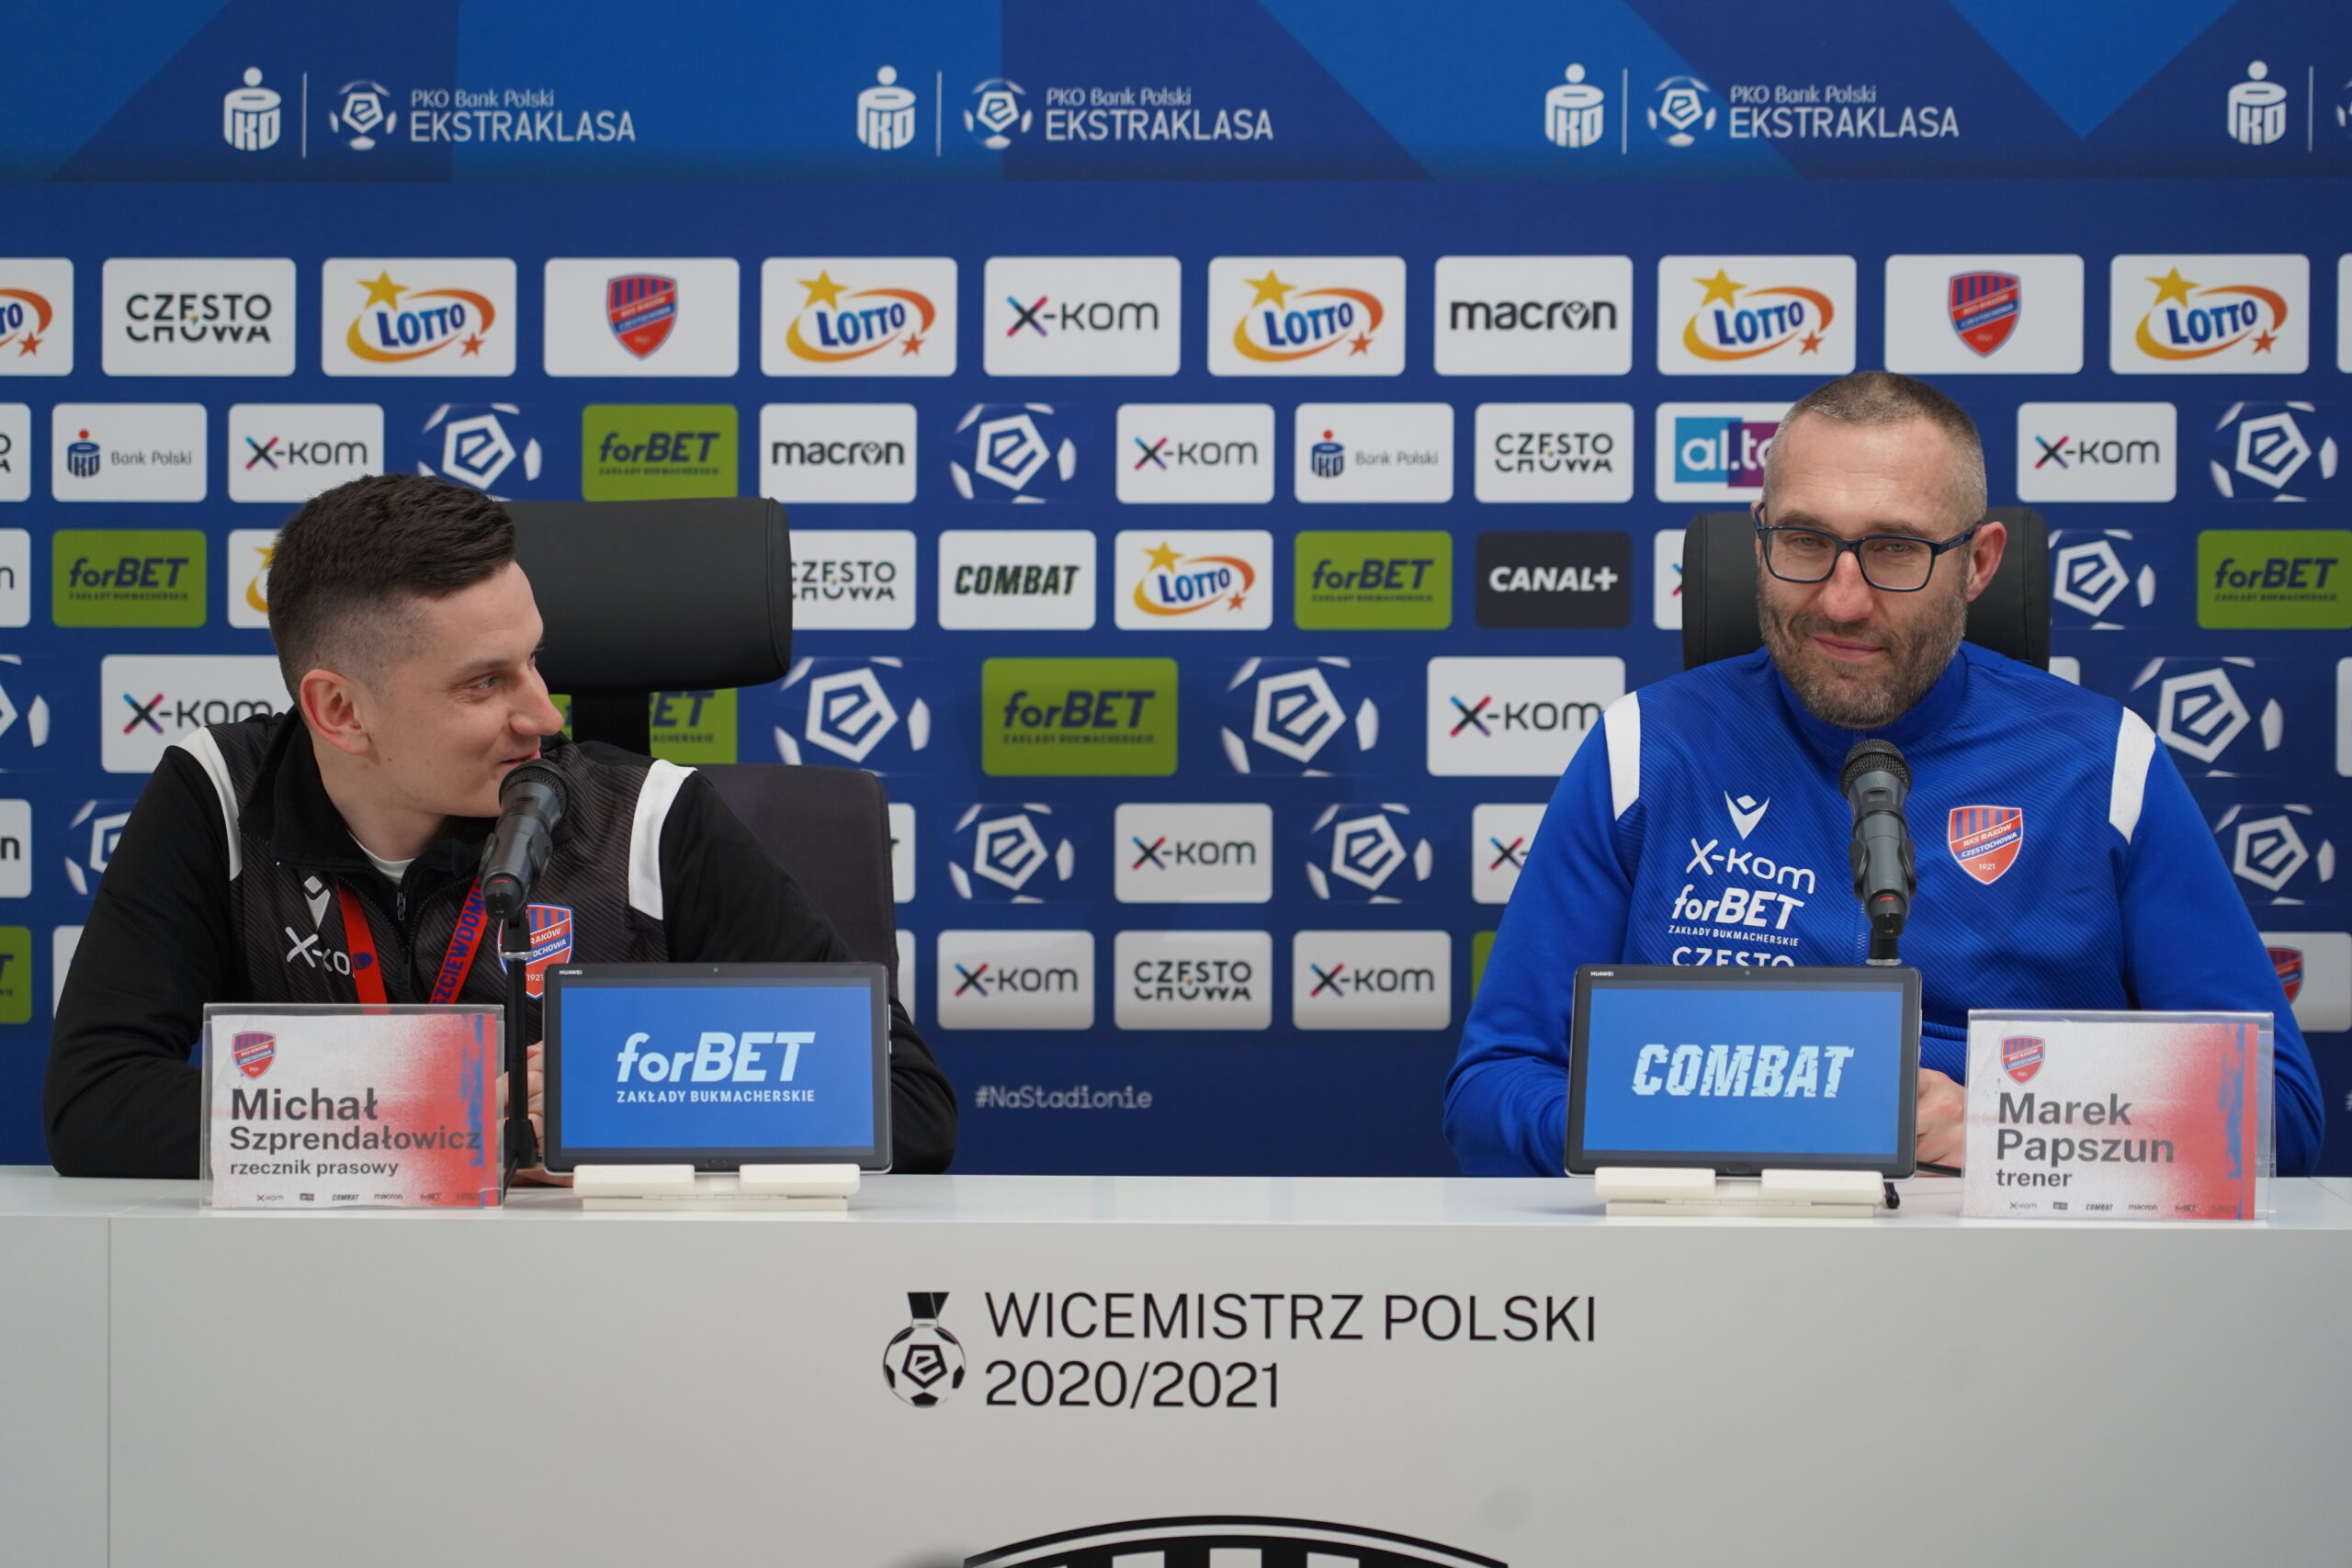 Trener Rakowa Marek Papszun po wygranej z Wisłą Płock: Cenne zwycięstwo odniesione w dobrym stylu 1